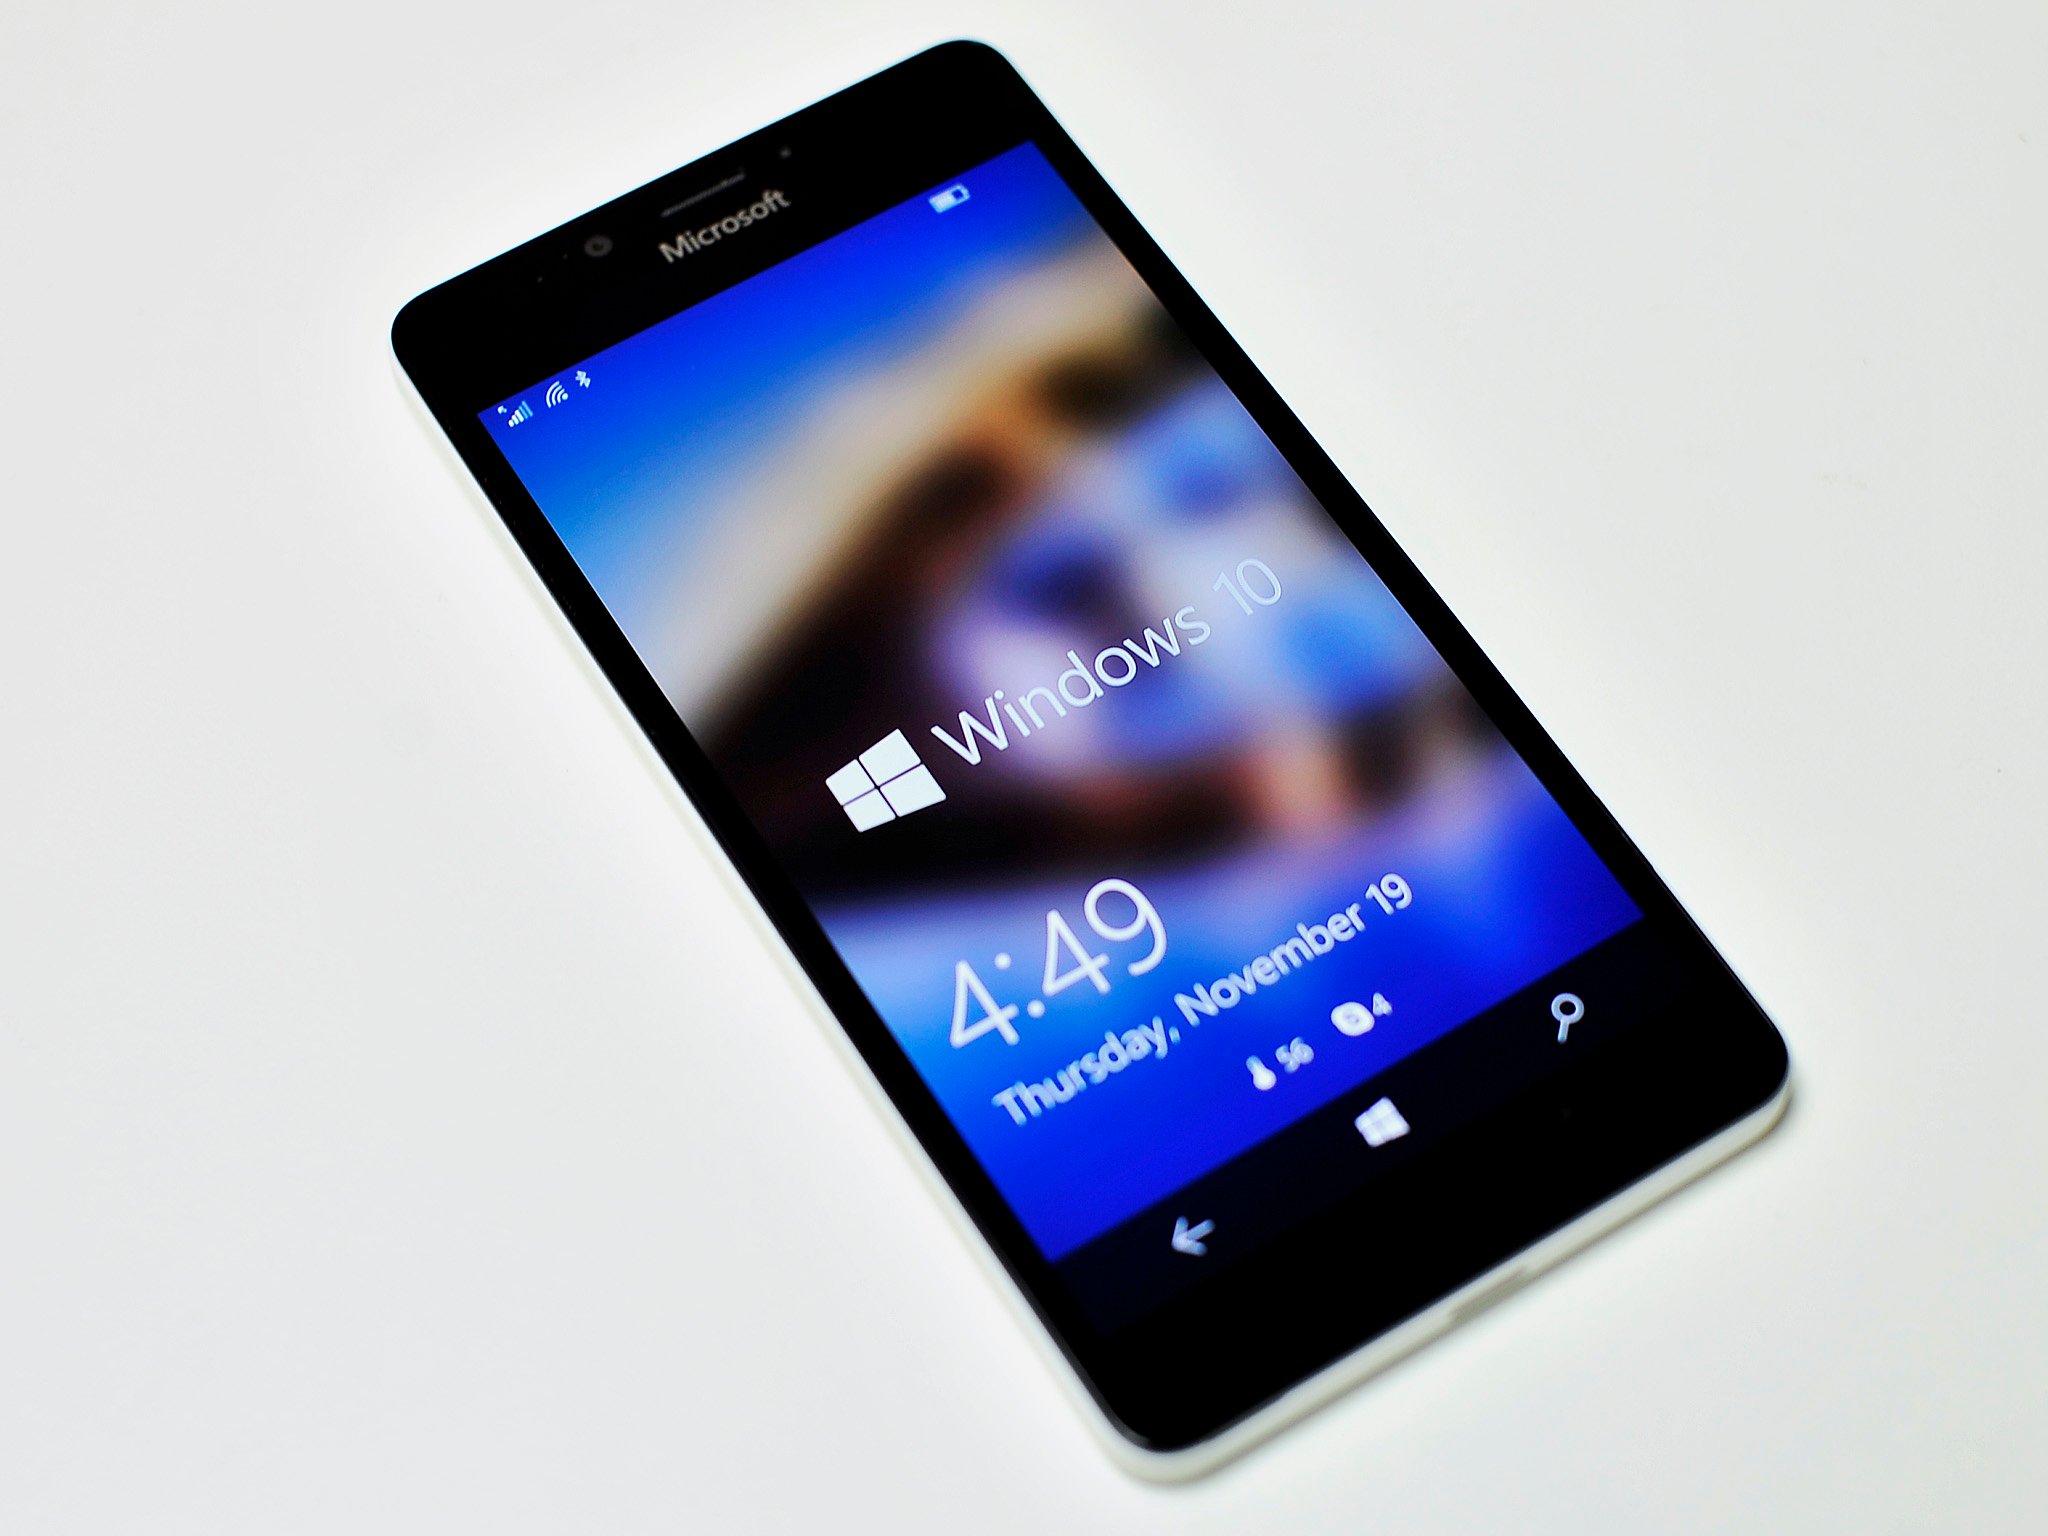 Microsoft Lumia 950 and Windows 10